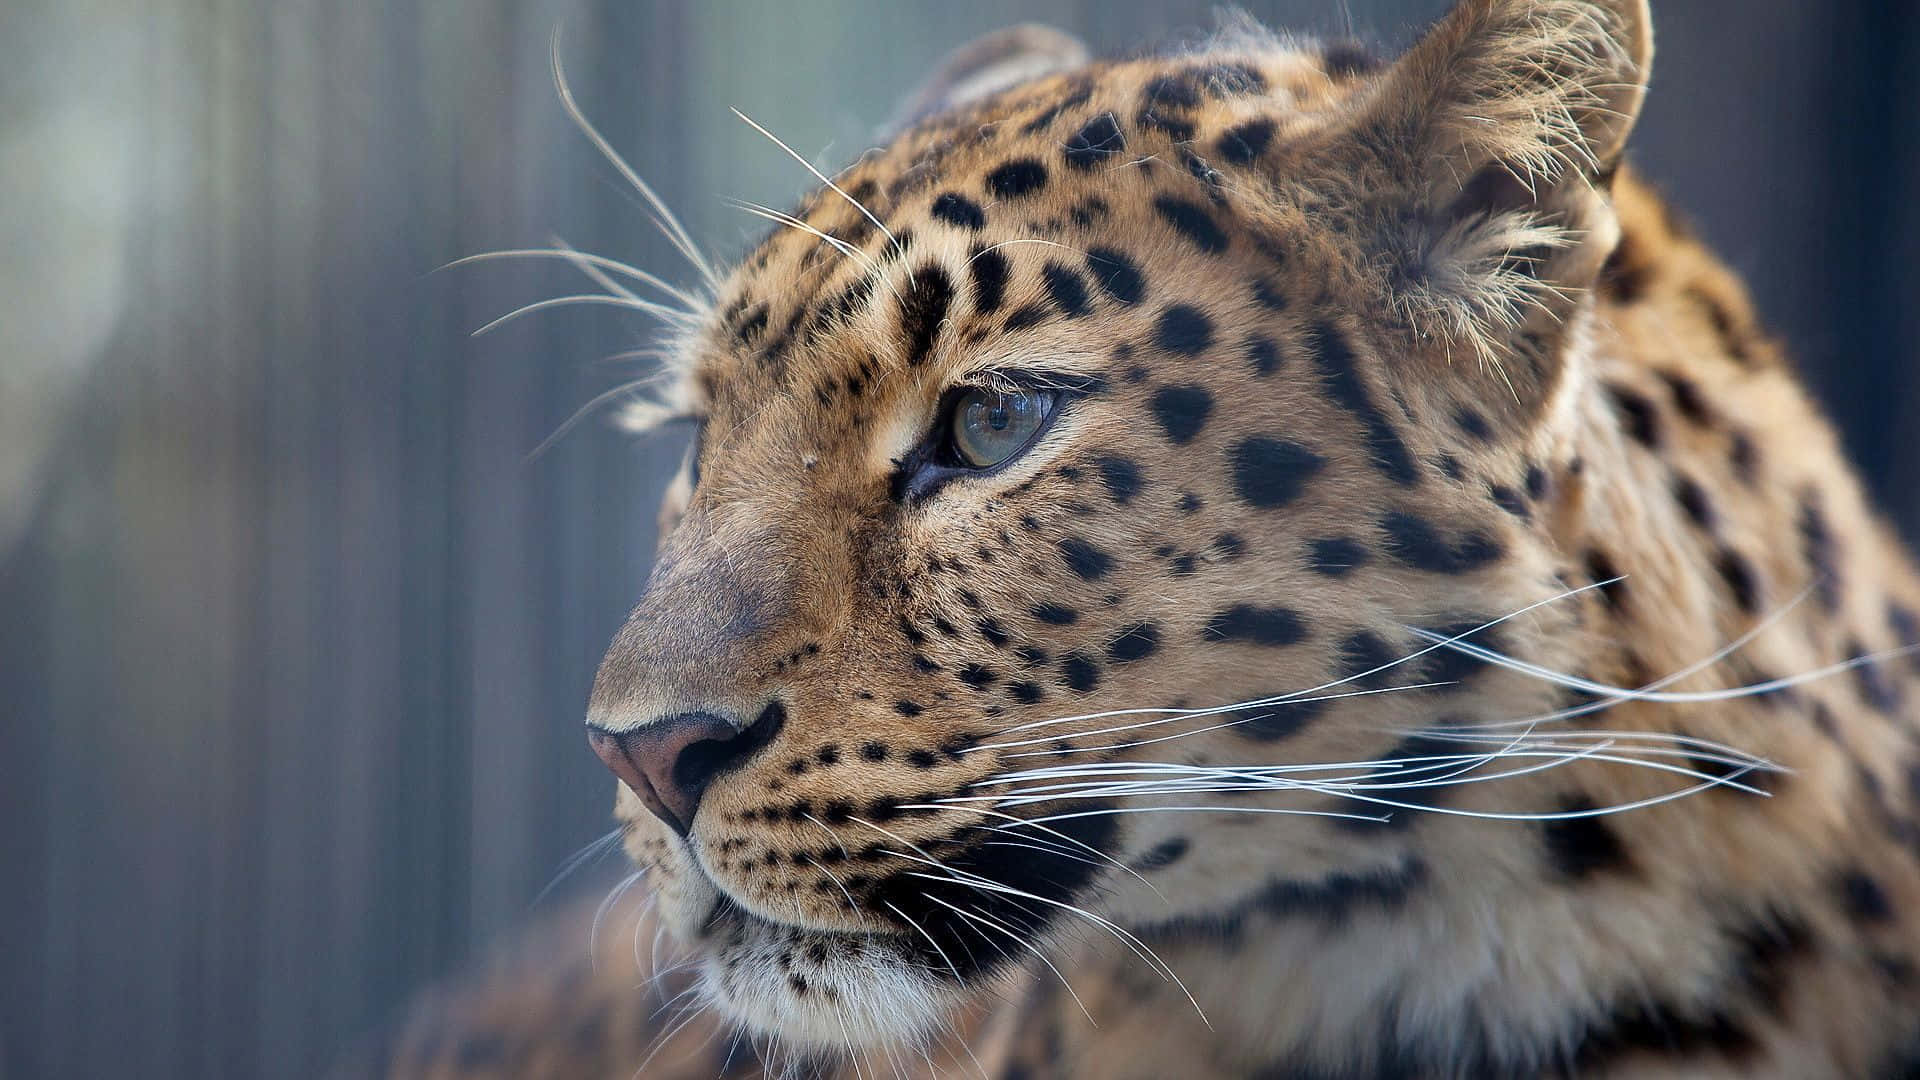 Lamaestosità Di Un Leopardo Dagli Occhi Rosa Nel Suo Habitat Naturale.